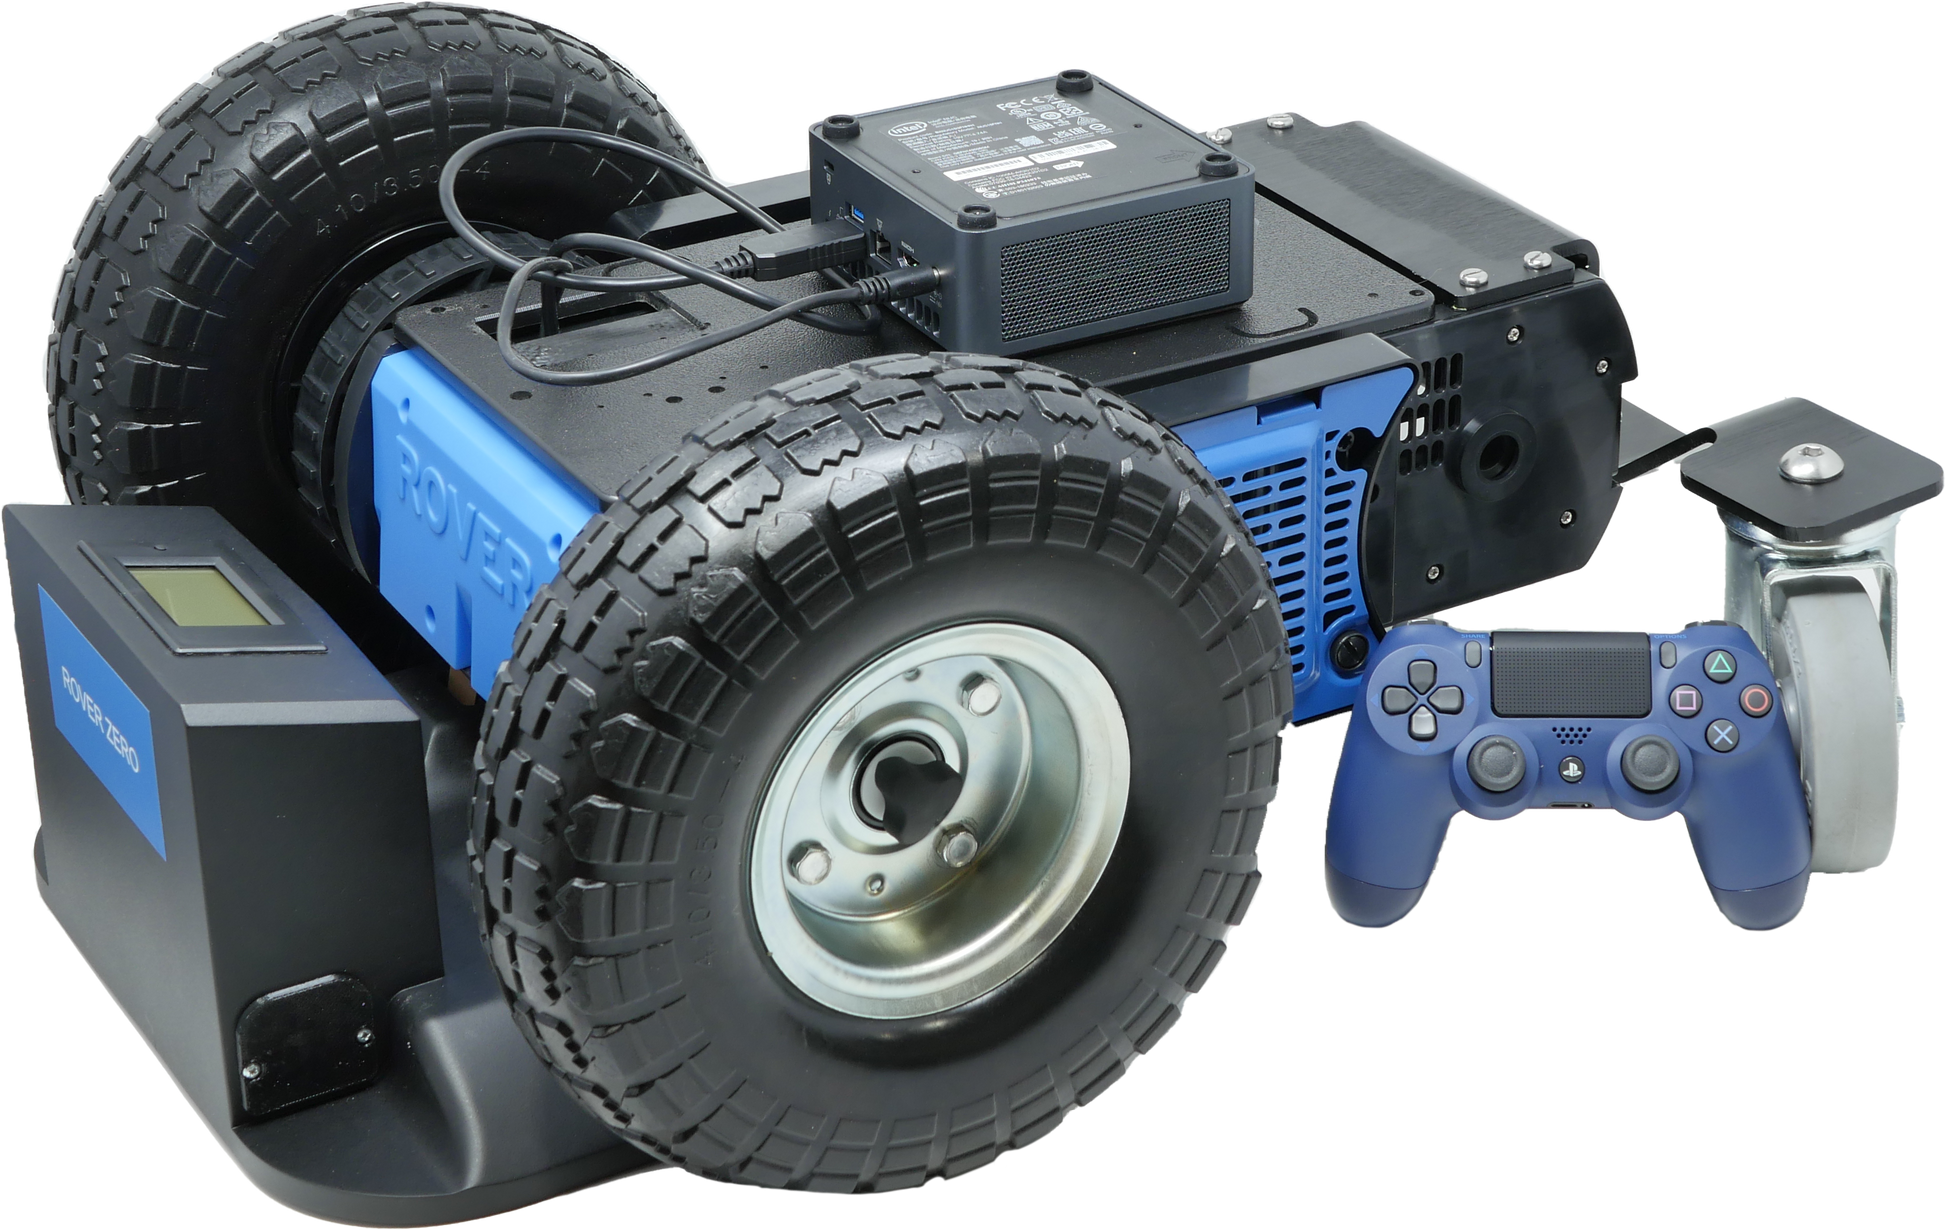 2WD Rover Zero 3 - Rover Robotics, Inc.